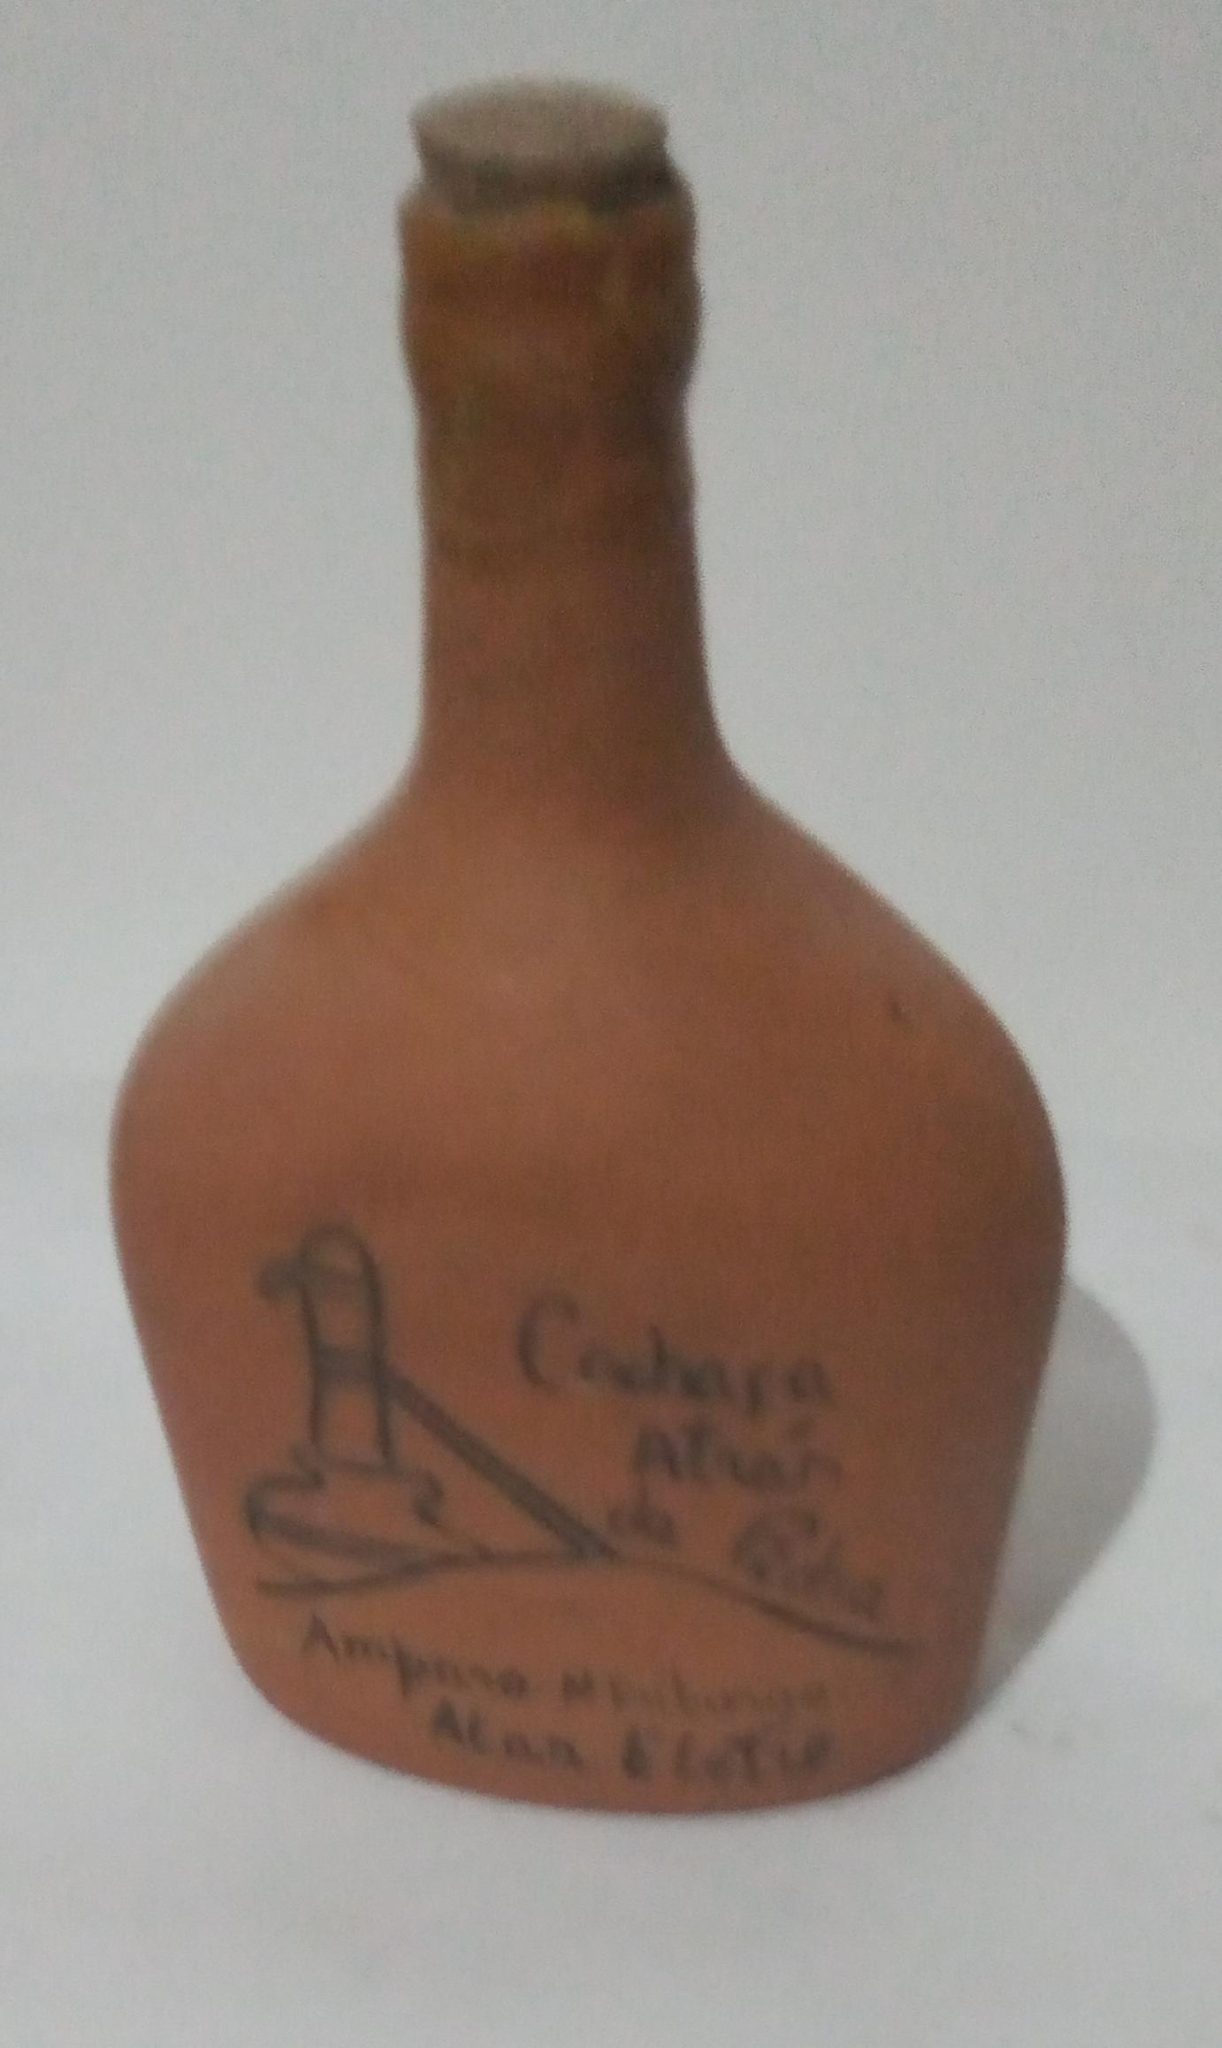 Garrafa Ceramica Cachaca Atras da Pedra Nova Friburgo Rj Tiragem 500 Unidades Vazia scaled Casa do Colecionador